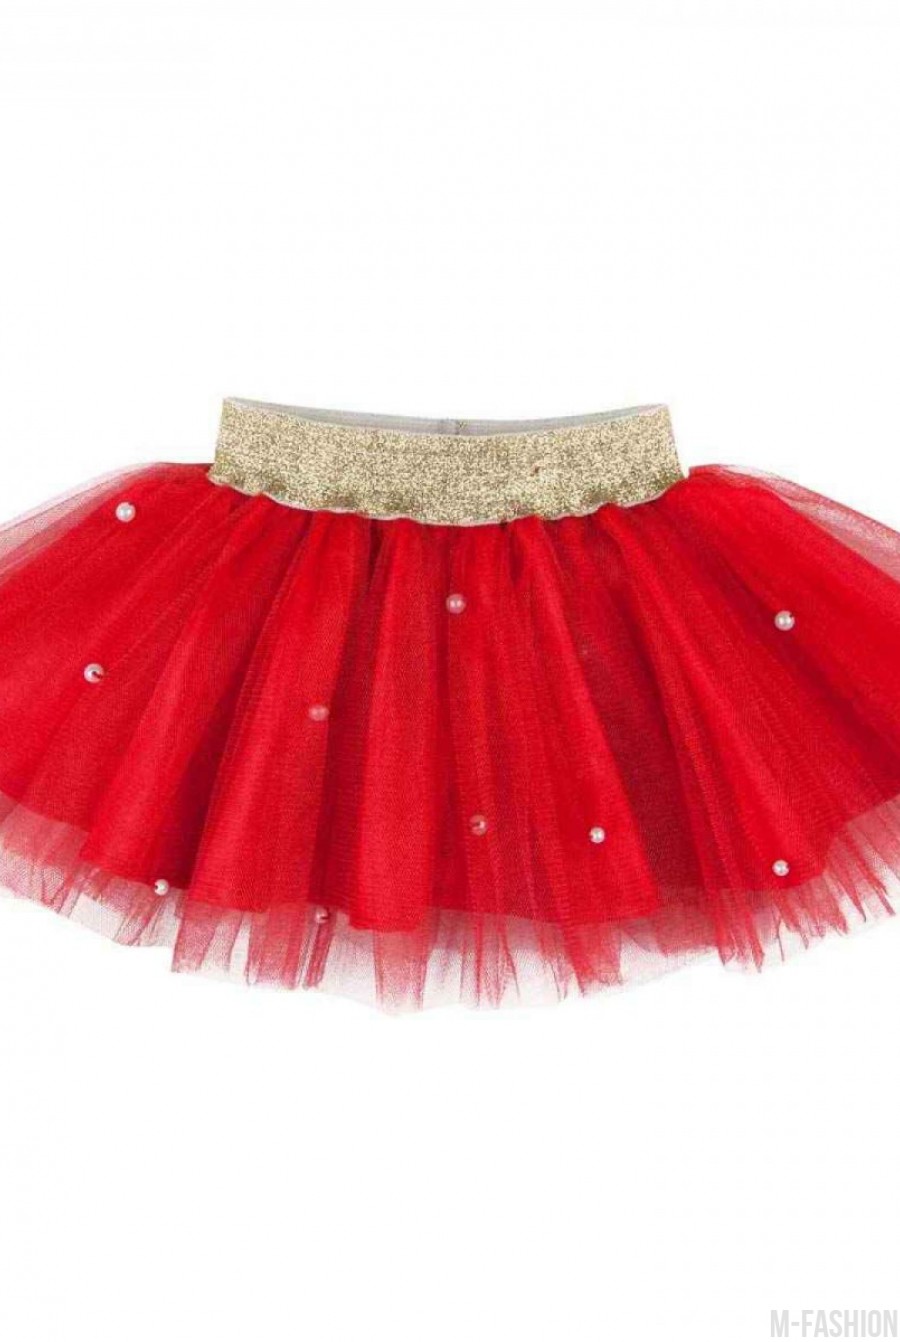 Красная пышная юбка из тафты и фатина с золотистым поясом - Фото 1